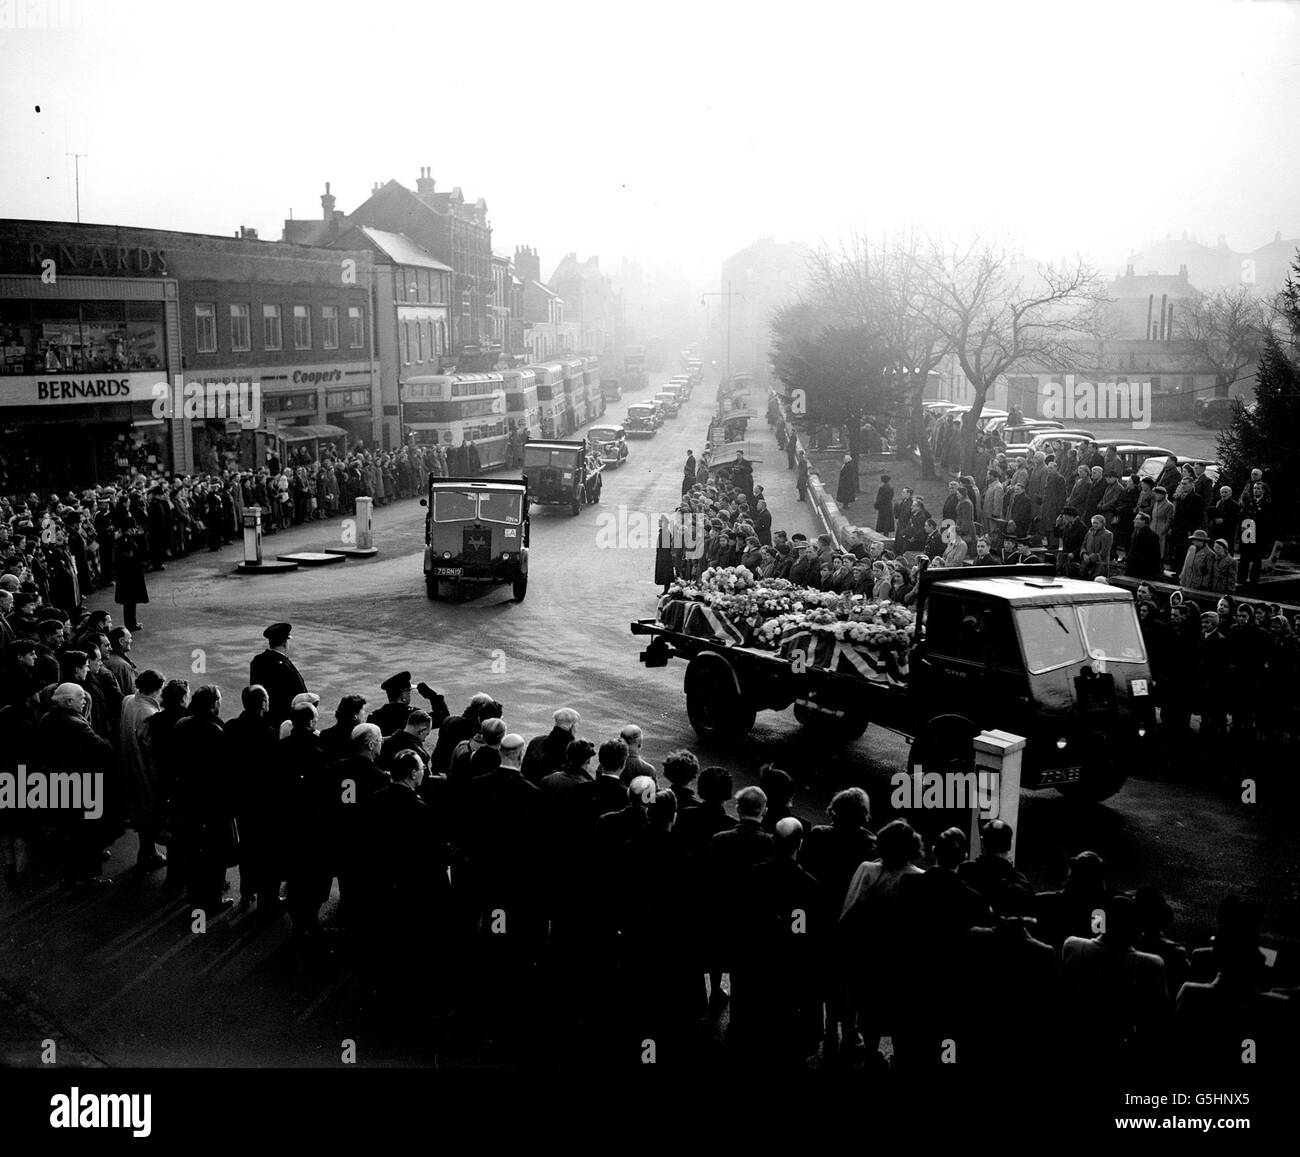 Die Menschen in drei Städten von Medway übergeben eine Hommage, bei der die Massenbegräbnis von 20 der 24 getöteten Royal Marine stattfand, als ein Bus in ihre marschierende Kolumne in Dock Road, Chatham, fuhr. Stockfoto